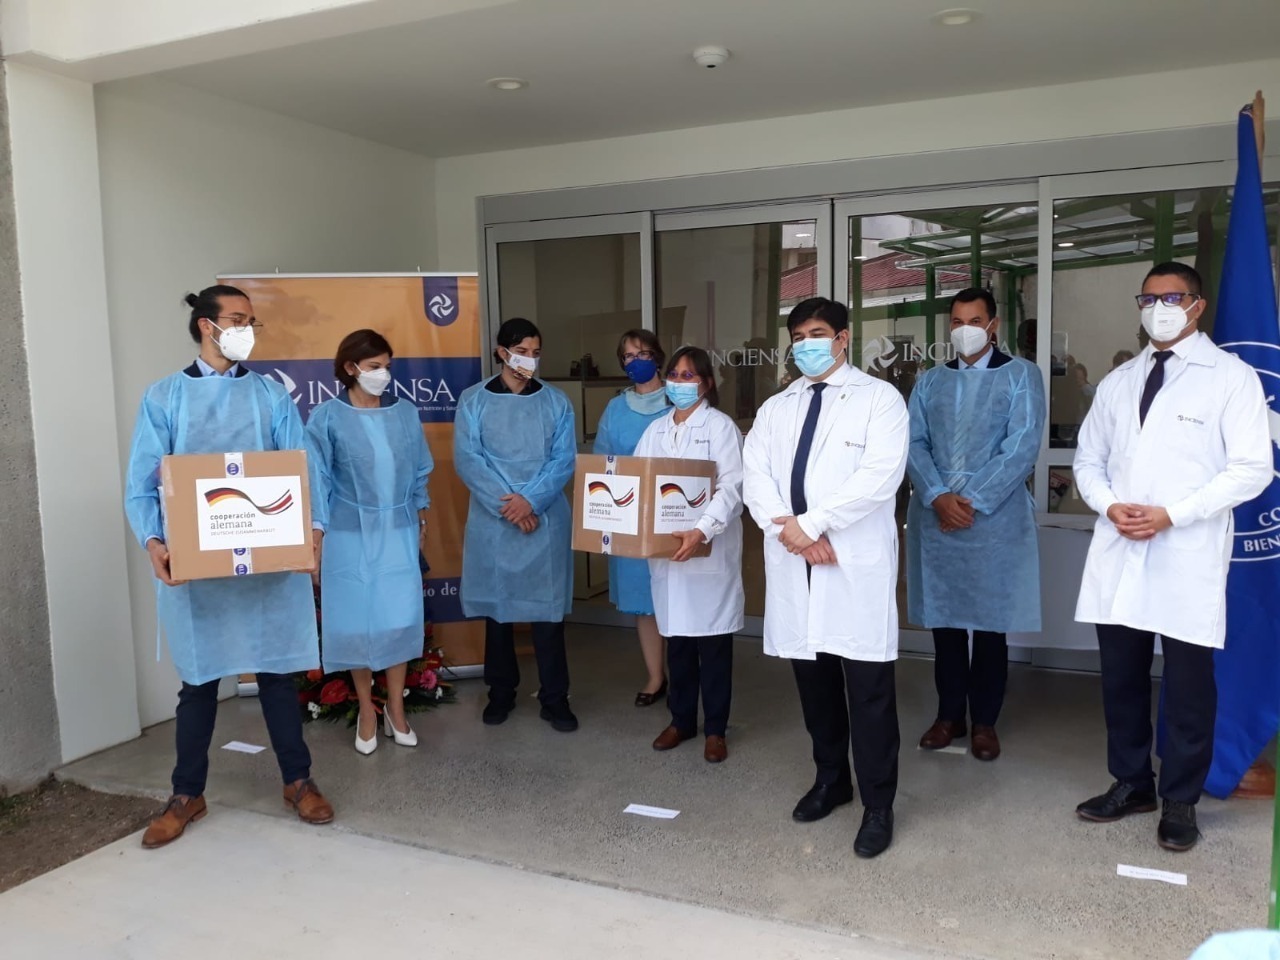 Costa Rica fortalece acciones contra el COVID-19 con donación de 100.000 pruebas PCR de Alemania